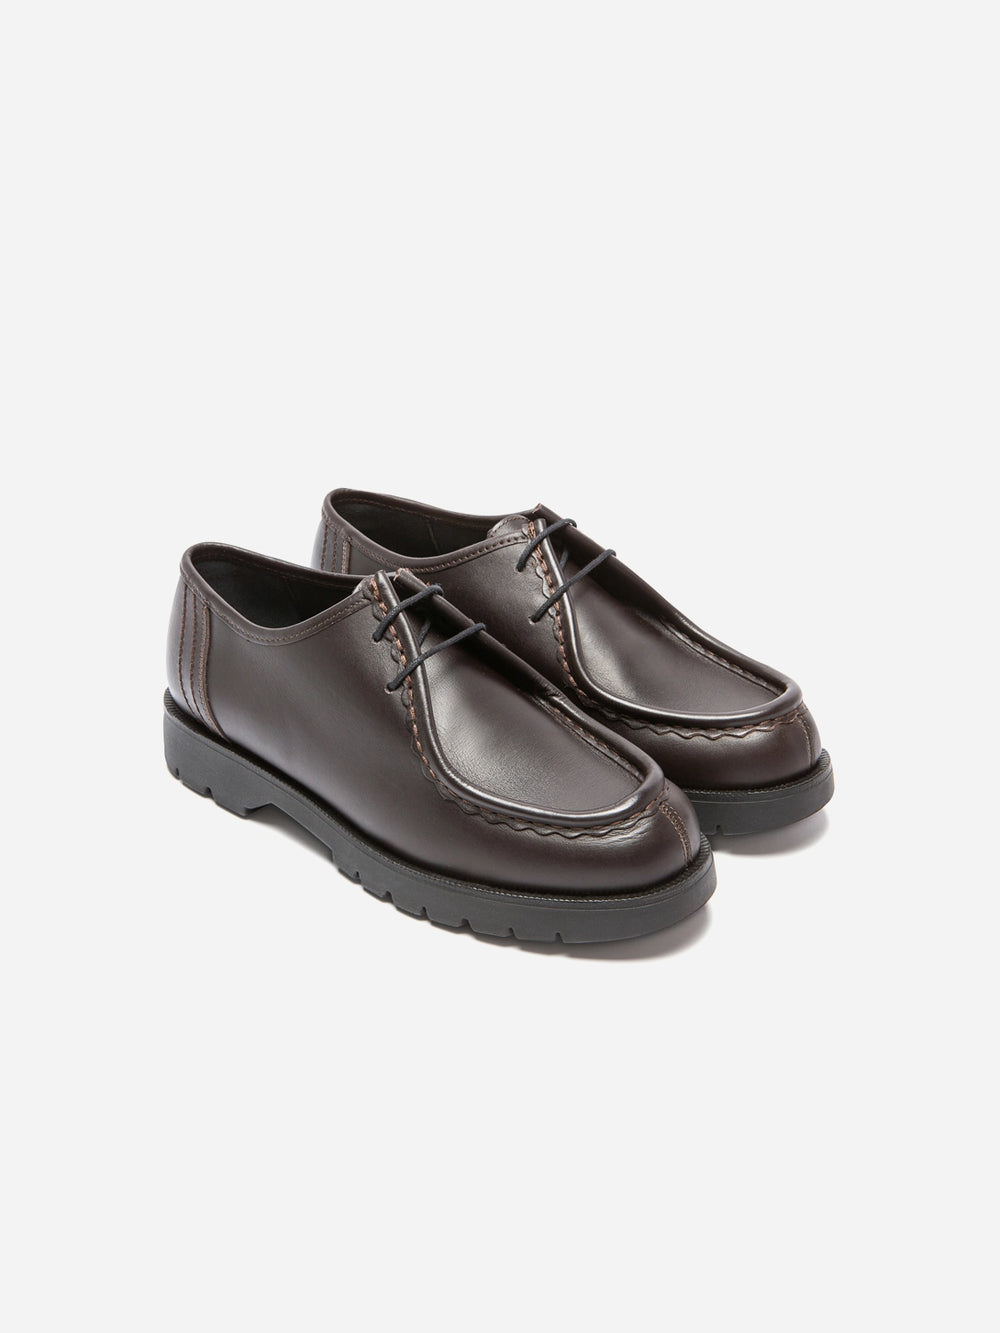 MARRON/NOIR Kleman Padror Loafer Shoes